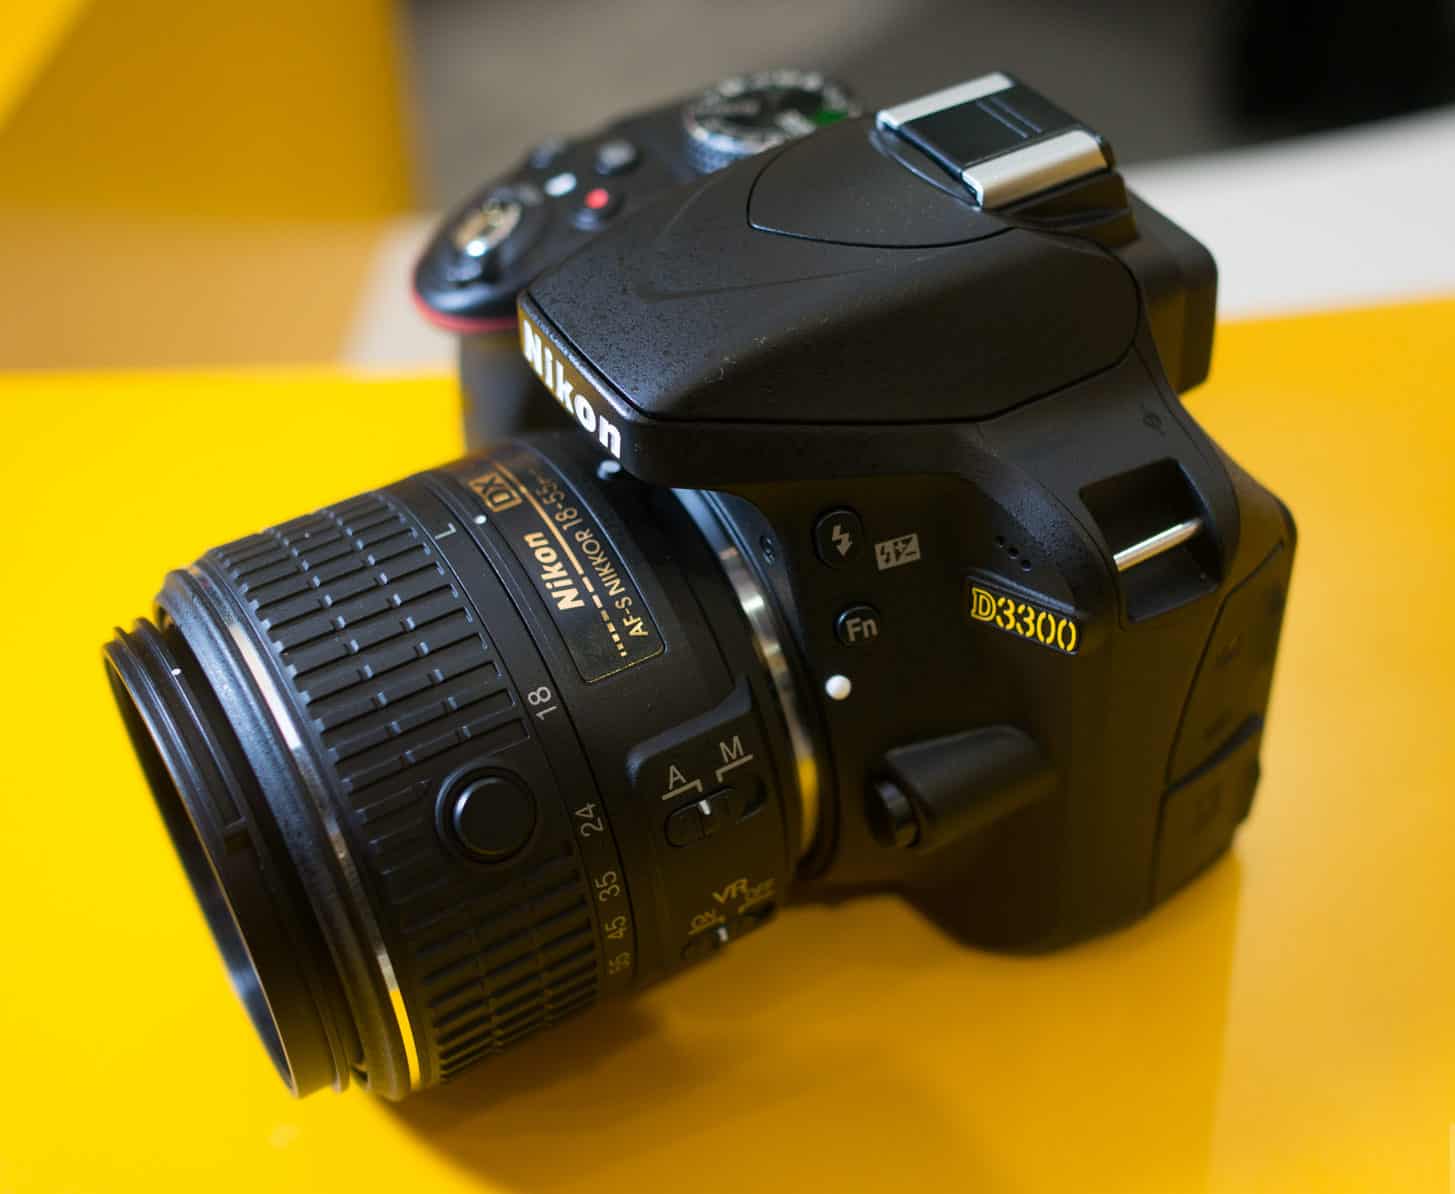 Nikon d3300 amateur photographer